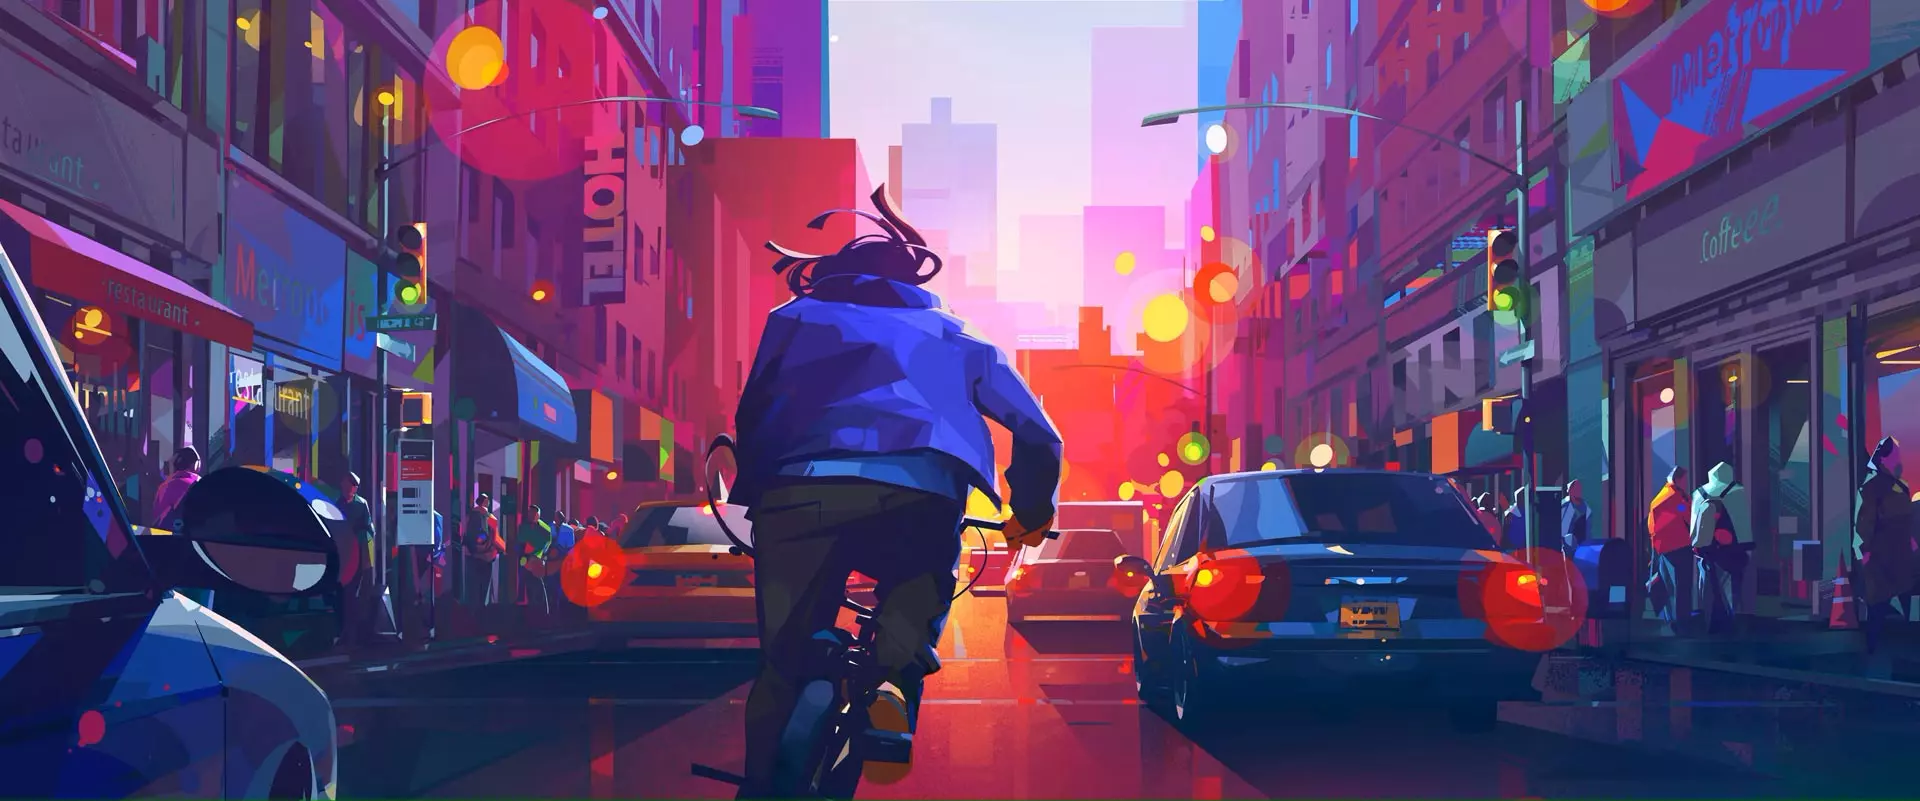 تصویری از خیابان، ترافیک و مردی در حال دوچرخ سواری در انیمیشن درون کهکشانی